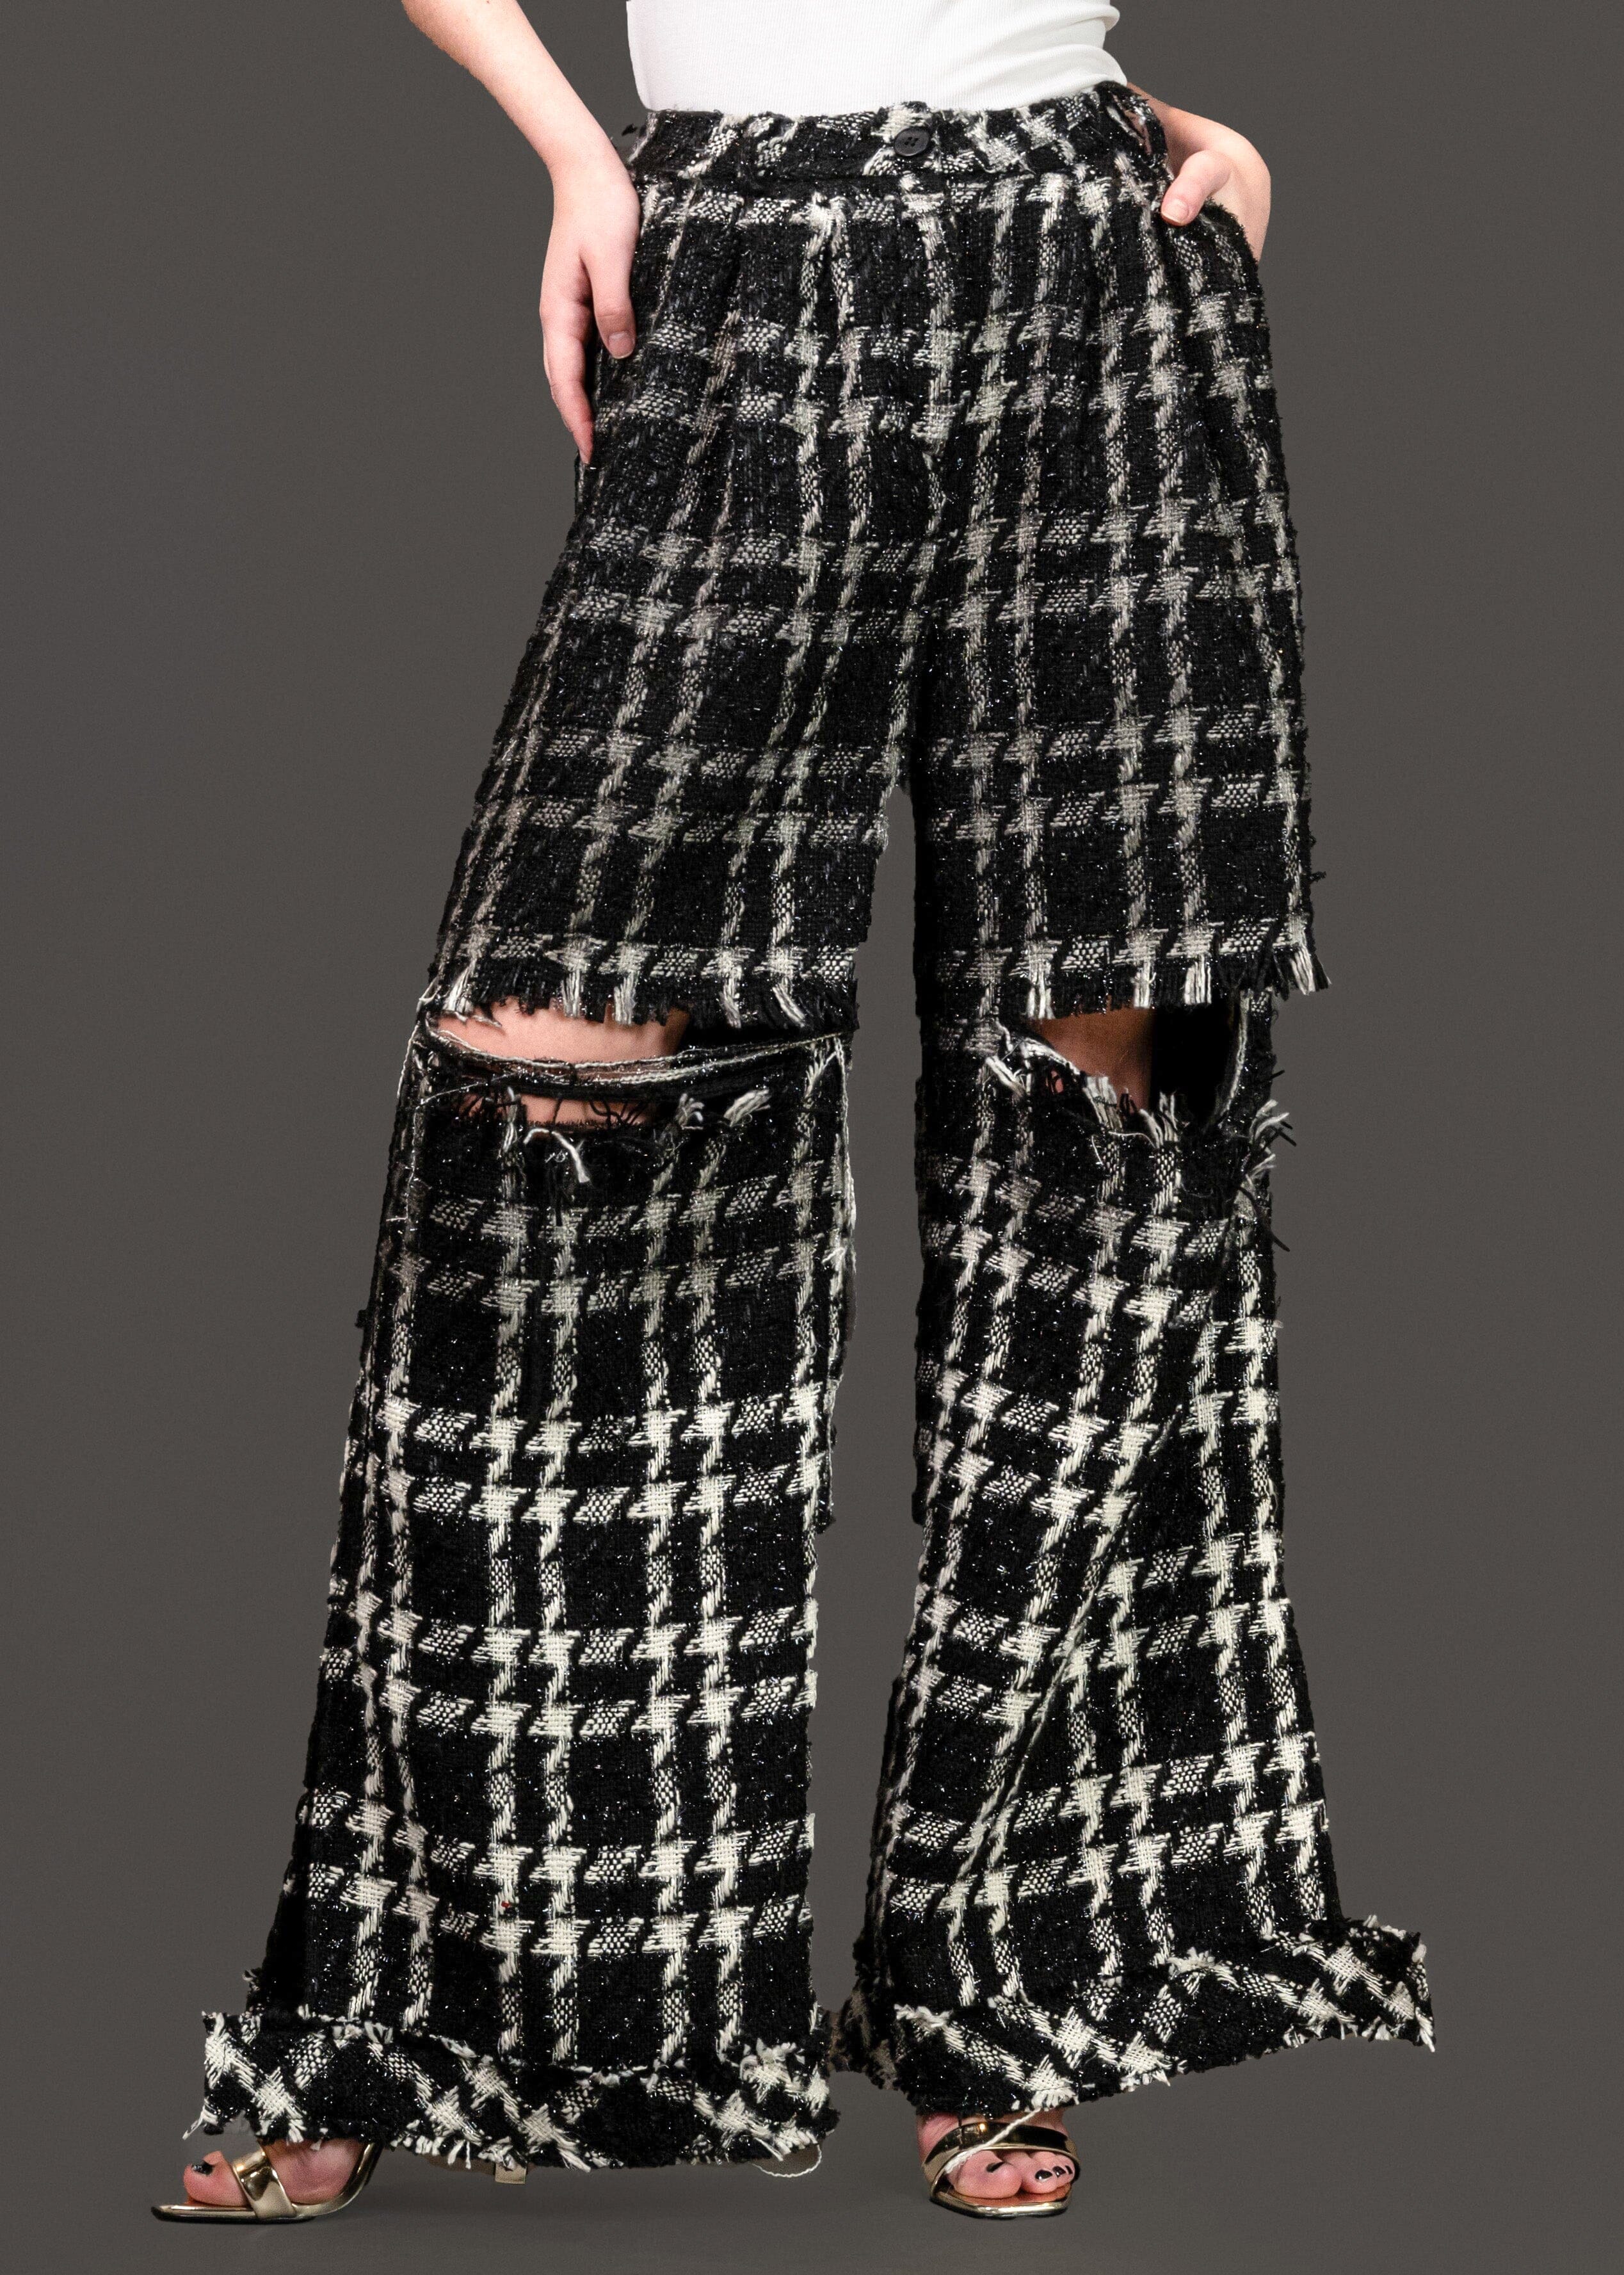 Houndstooth Tweed Dress Pants Pants Kate Hewko 